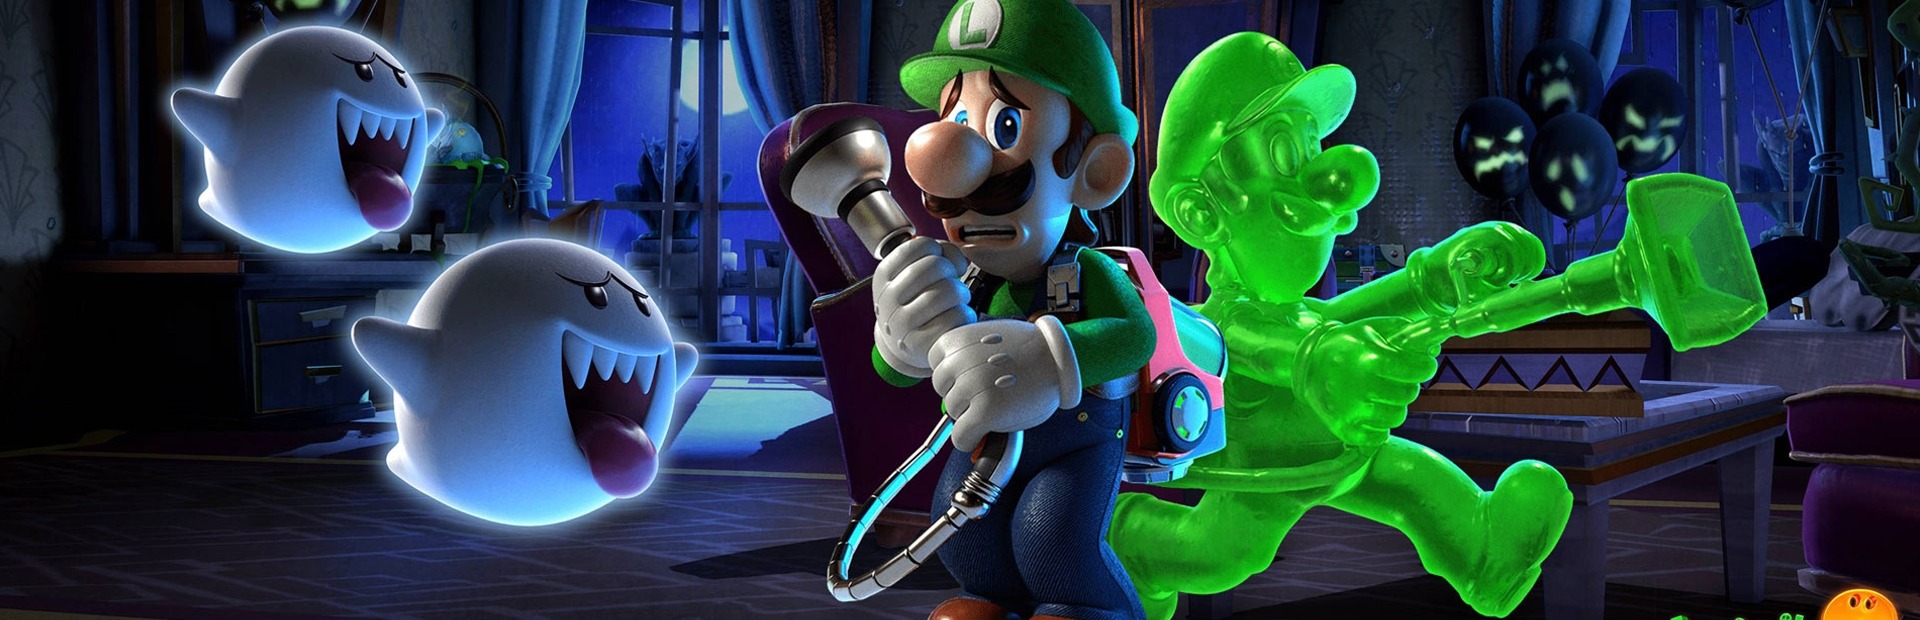 Banner Luigi's Mansion 3 Switch